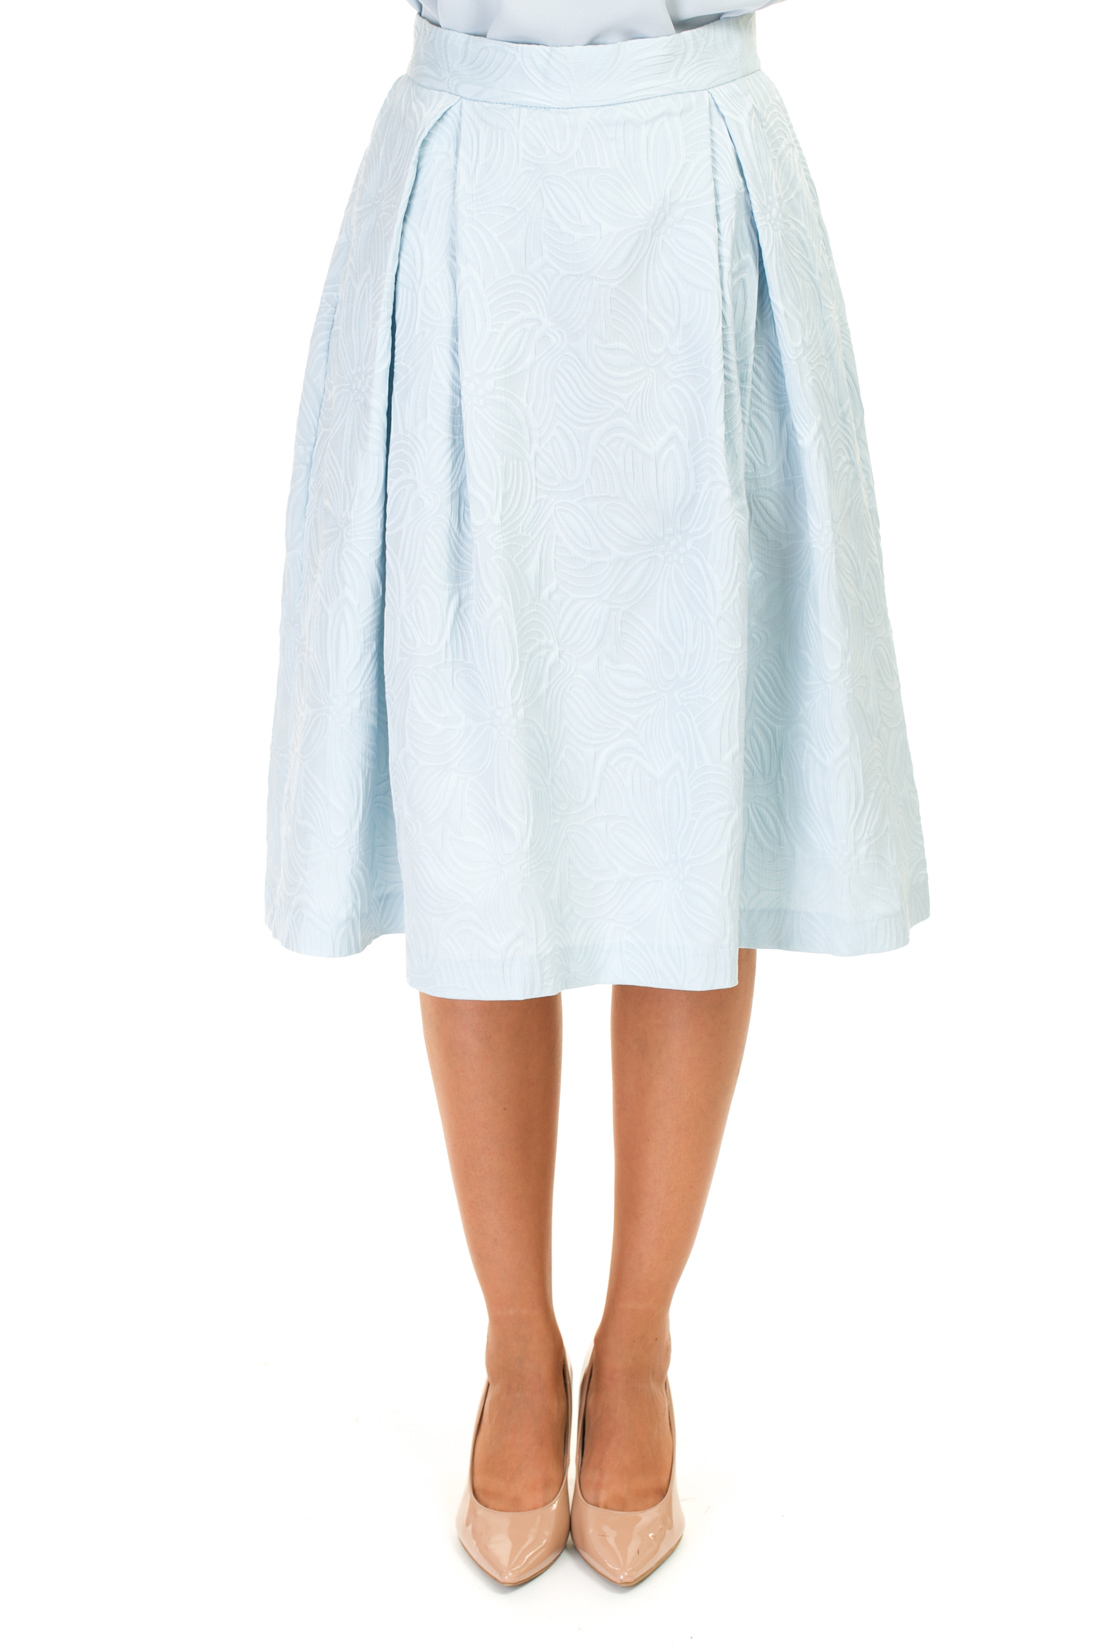 Пышная юбка из жаккардового материала (арт. baon B477027), размер M, цвет белый Пышная юбка из жаккардового материала (арт. baon B477027) - фото 5